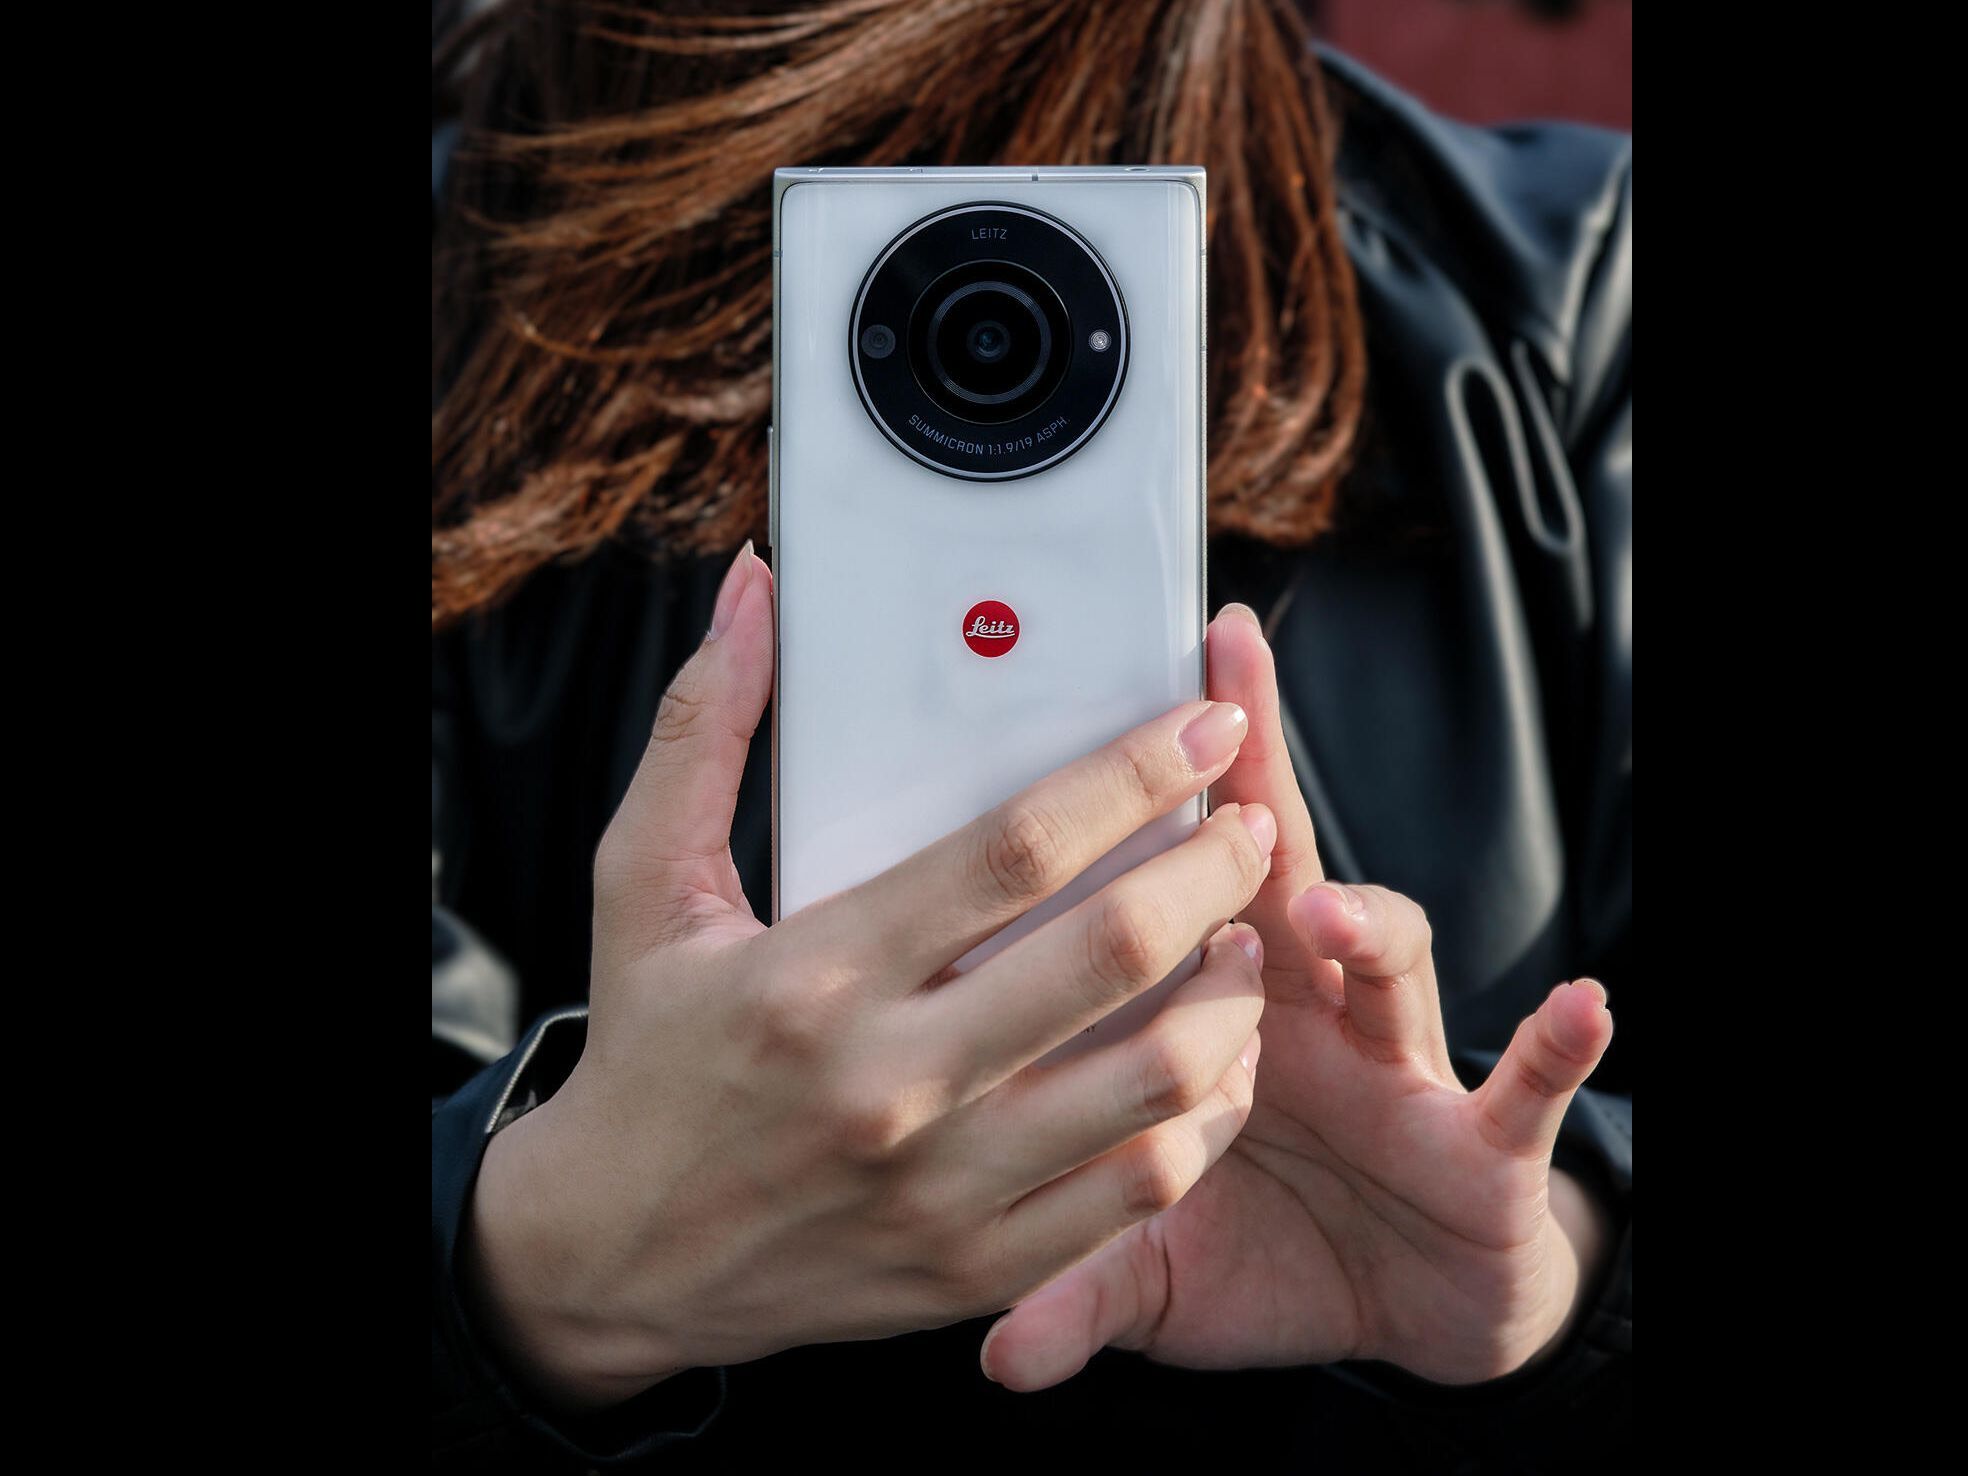 सिंगल-कैमरा सेटअप कैमरा फील को बेचने में मदद करता है, भले ही यह पुराना लग सकता है।  - जापान में जारी लीका के लीट्ज़ 2 के साथ पेशेवर फोटोग्राफी फिर से मोबाइल हो जाती है